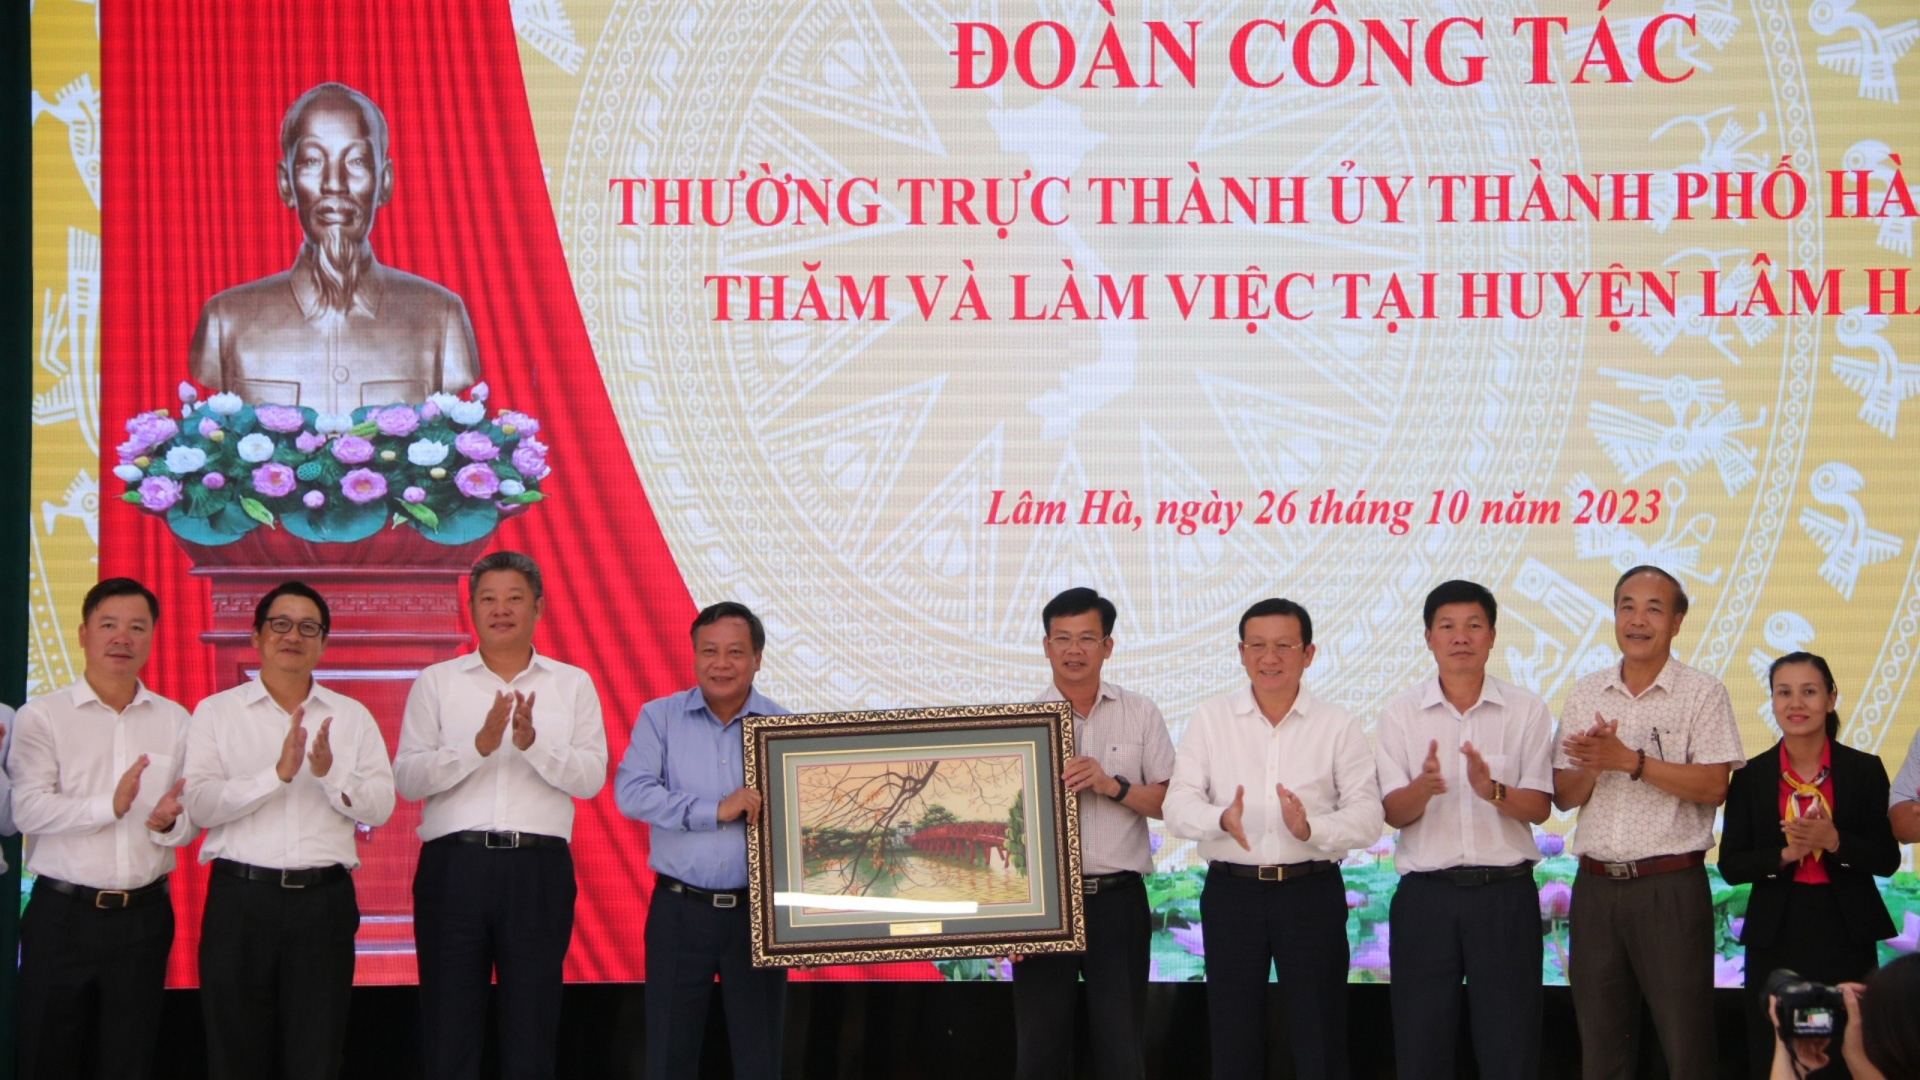 Đoàn công tác Thành ủy Hà Nội thăm và làm việc với Huyện ủy Lâm Hà